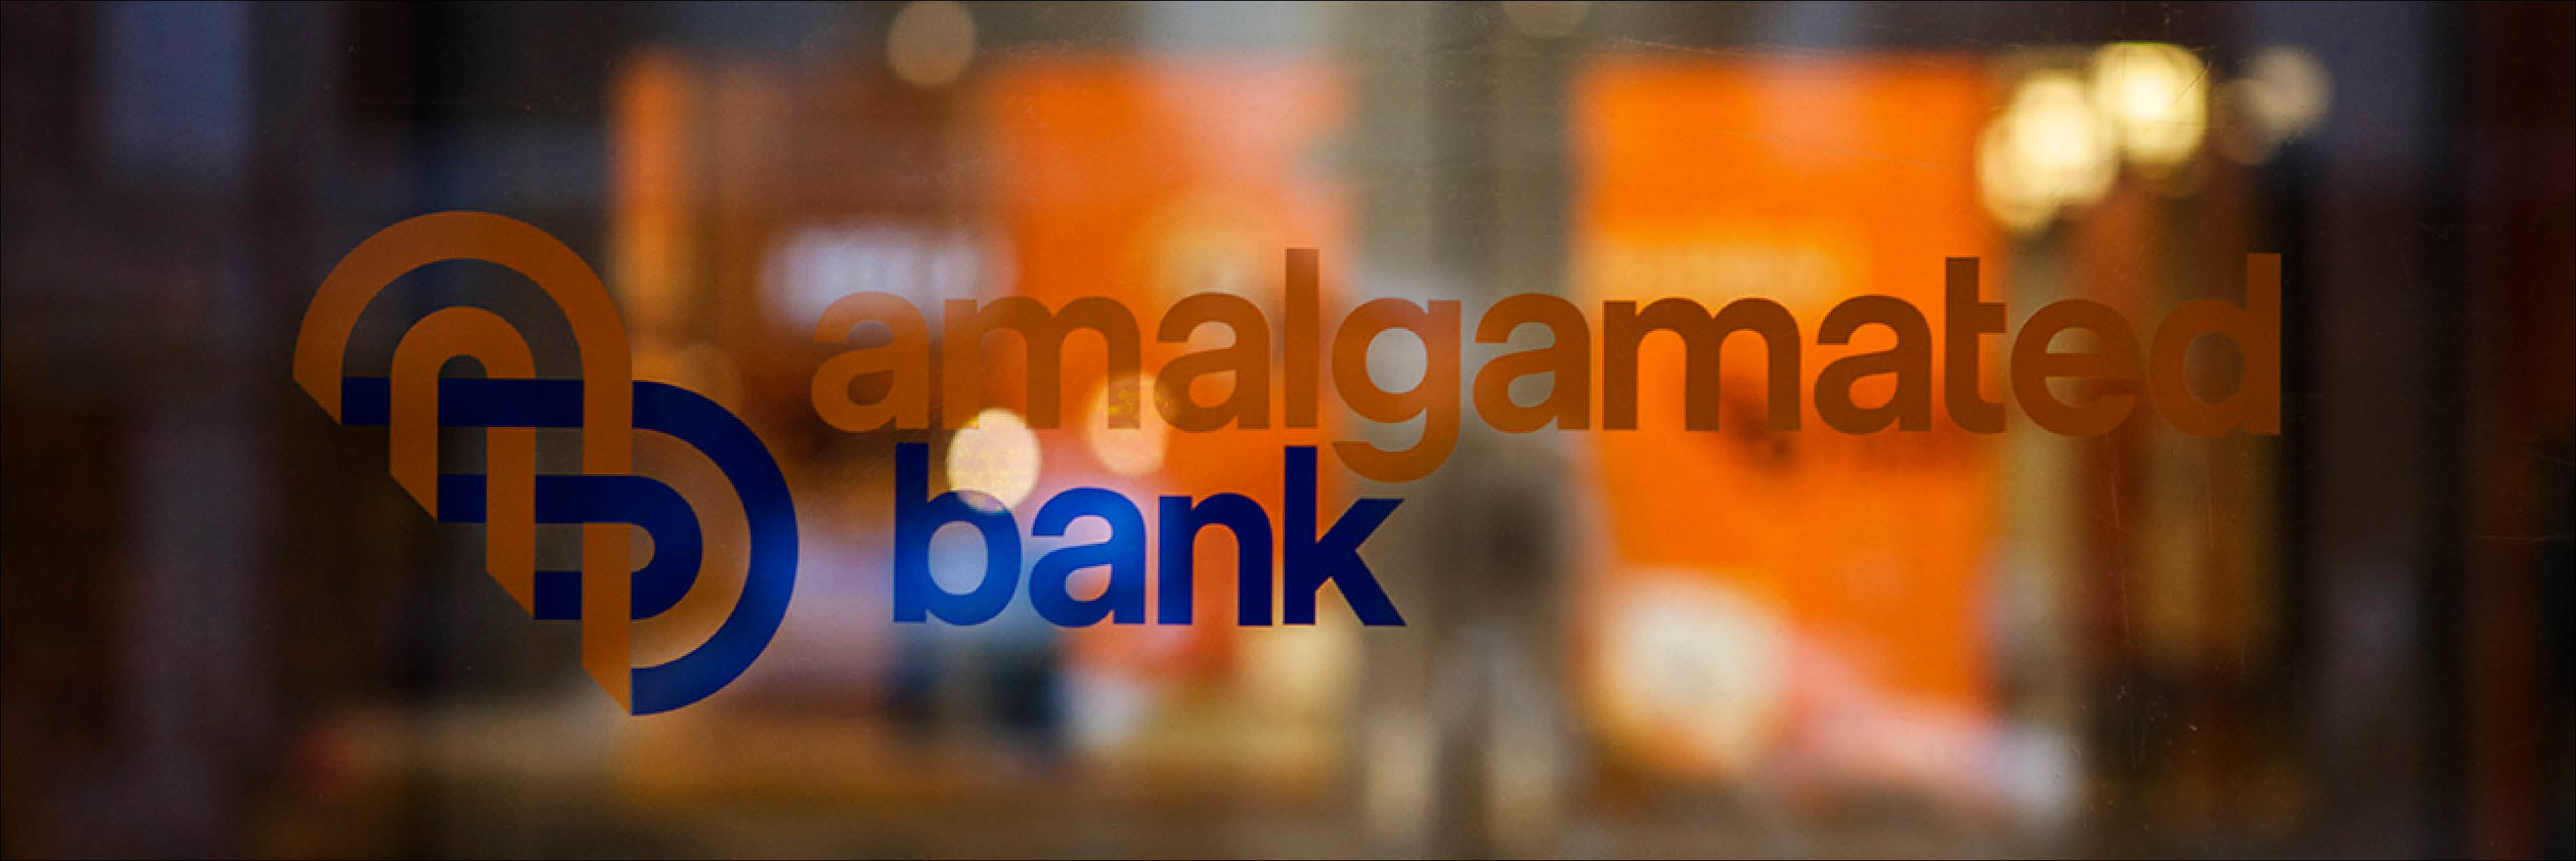 Amalgamated Bank logo on glass 